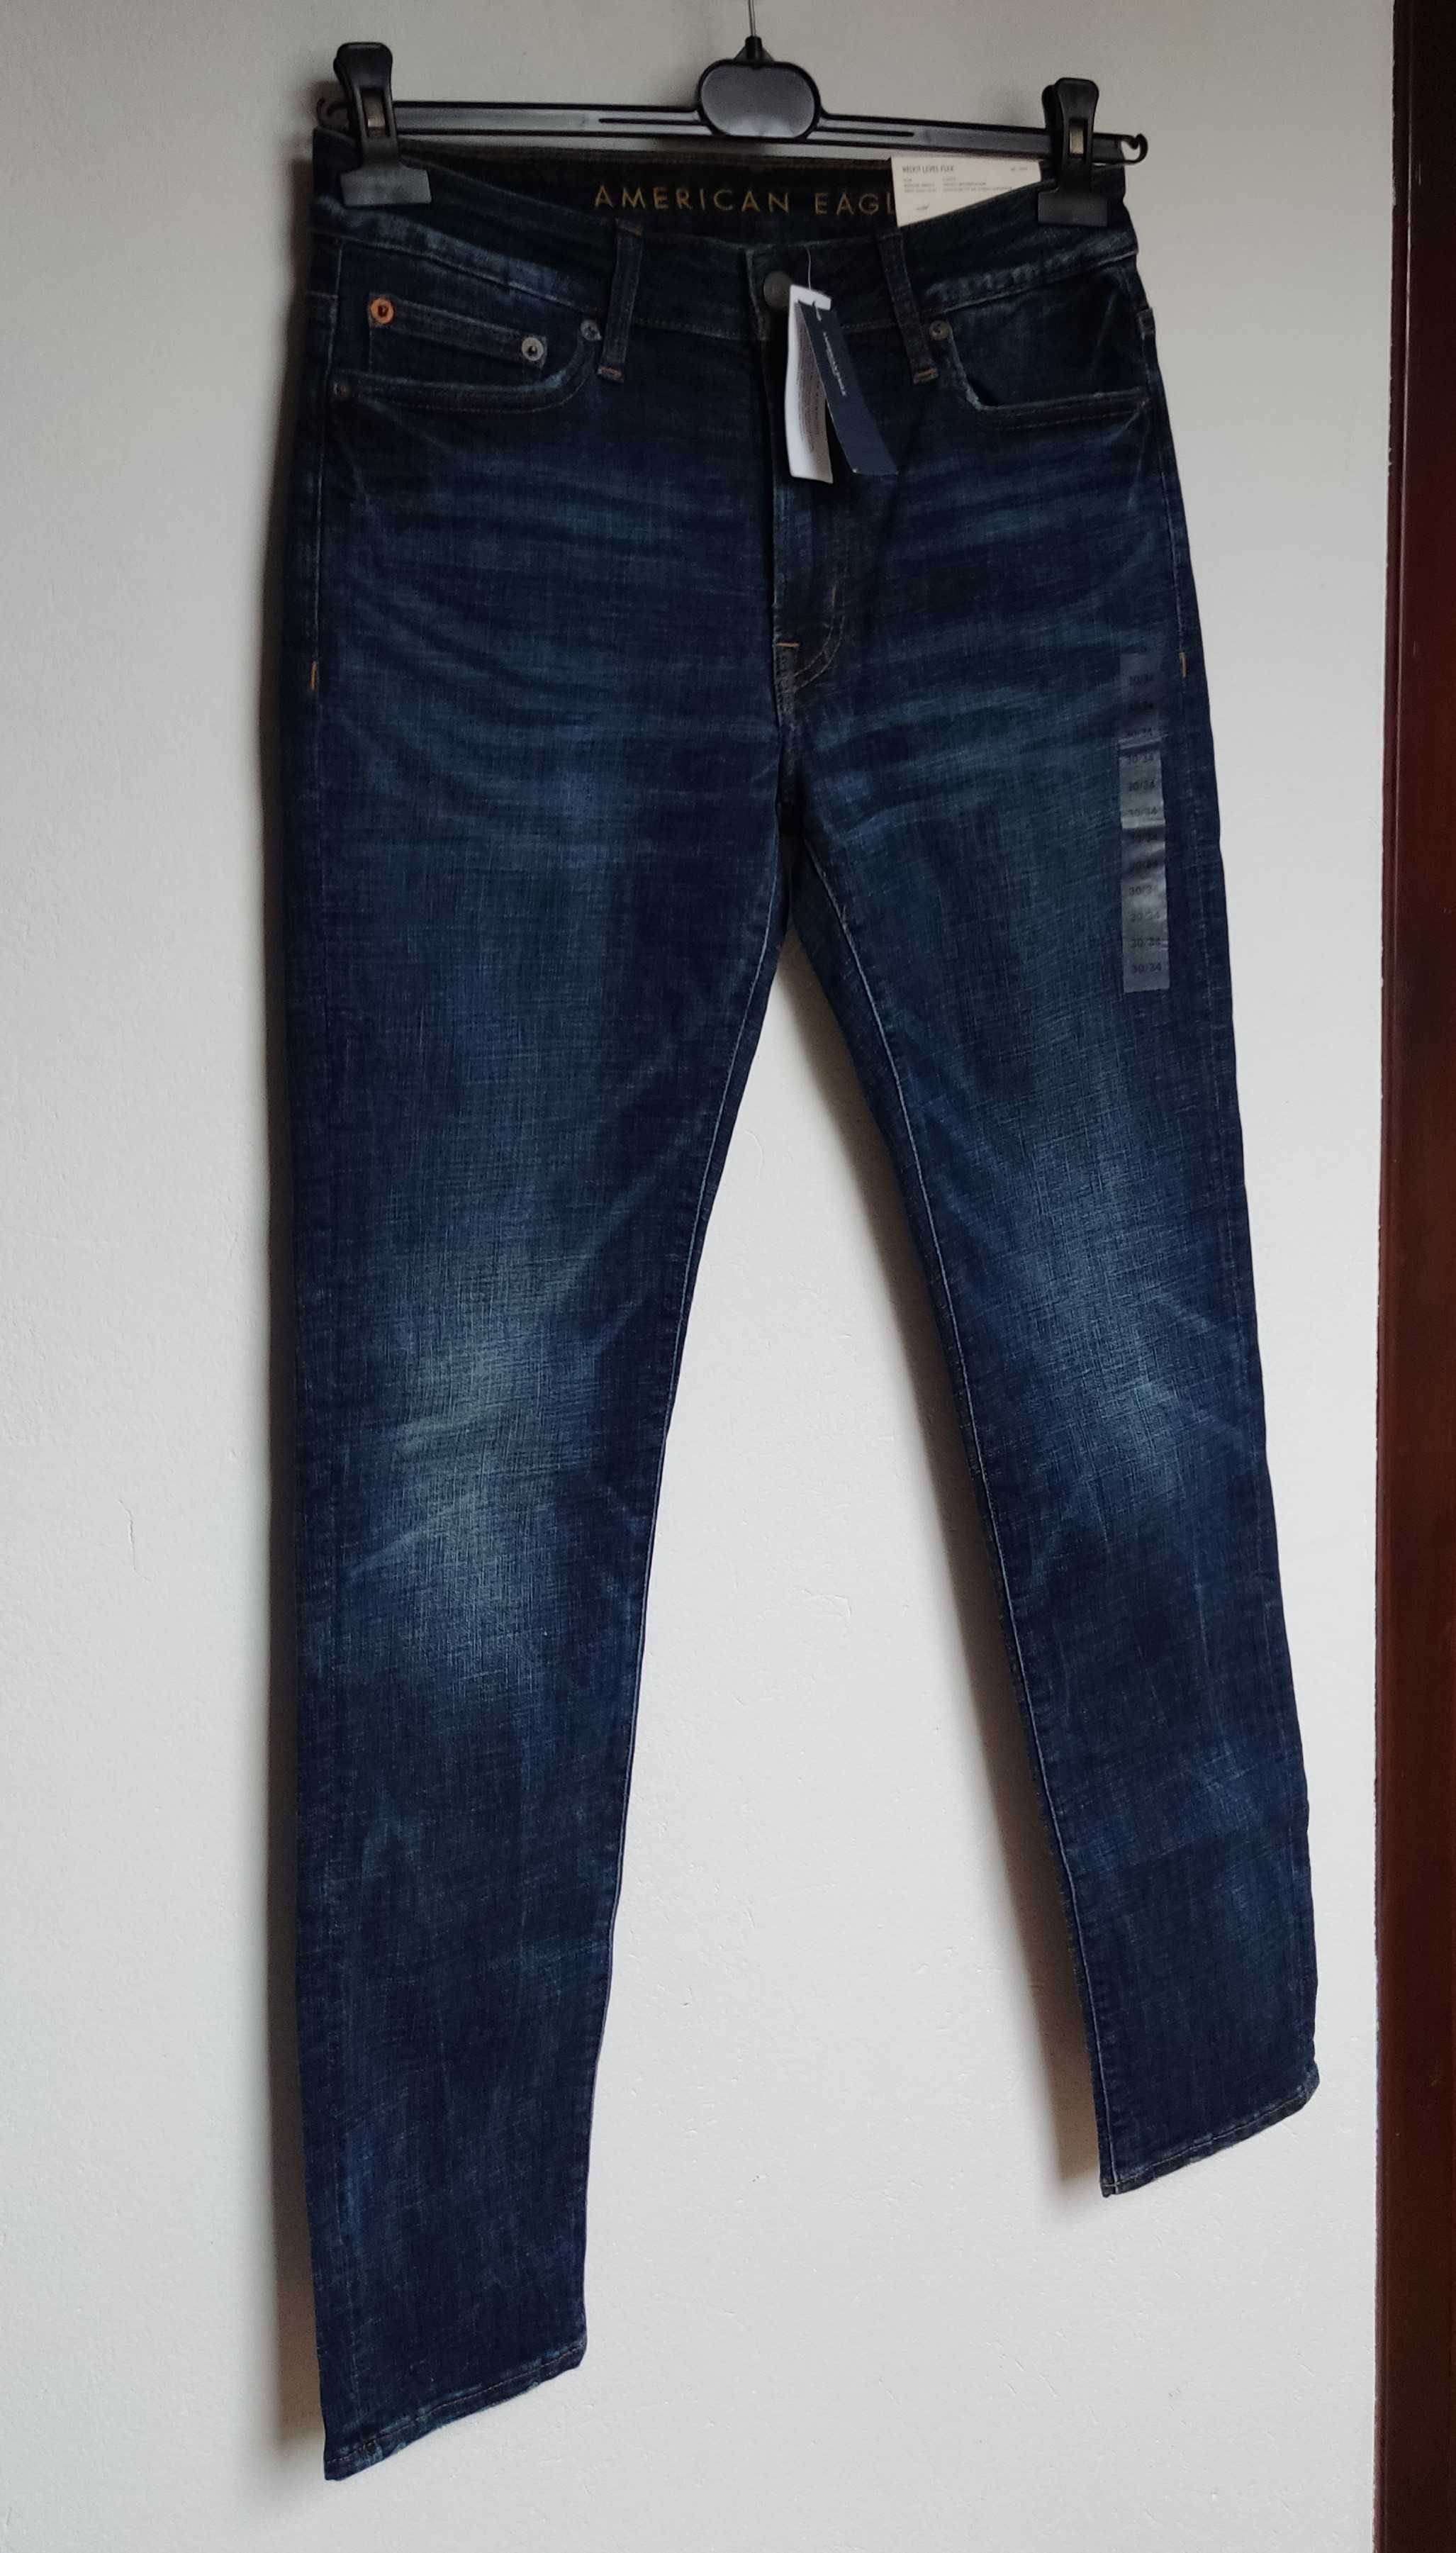 Spodnie jeansowe dżinsy męskie młodzieżowe granatowe nowe 30/34